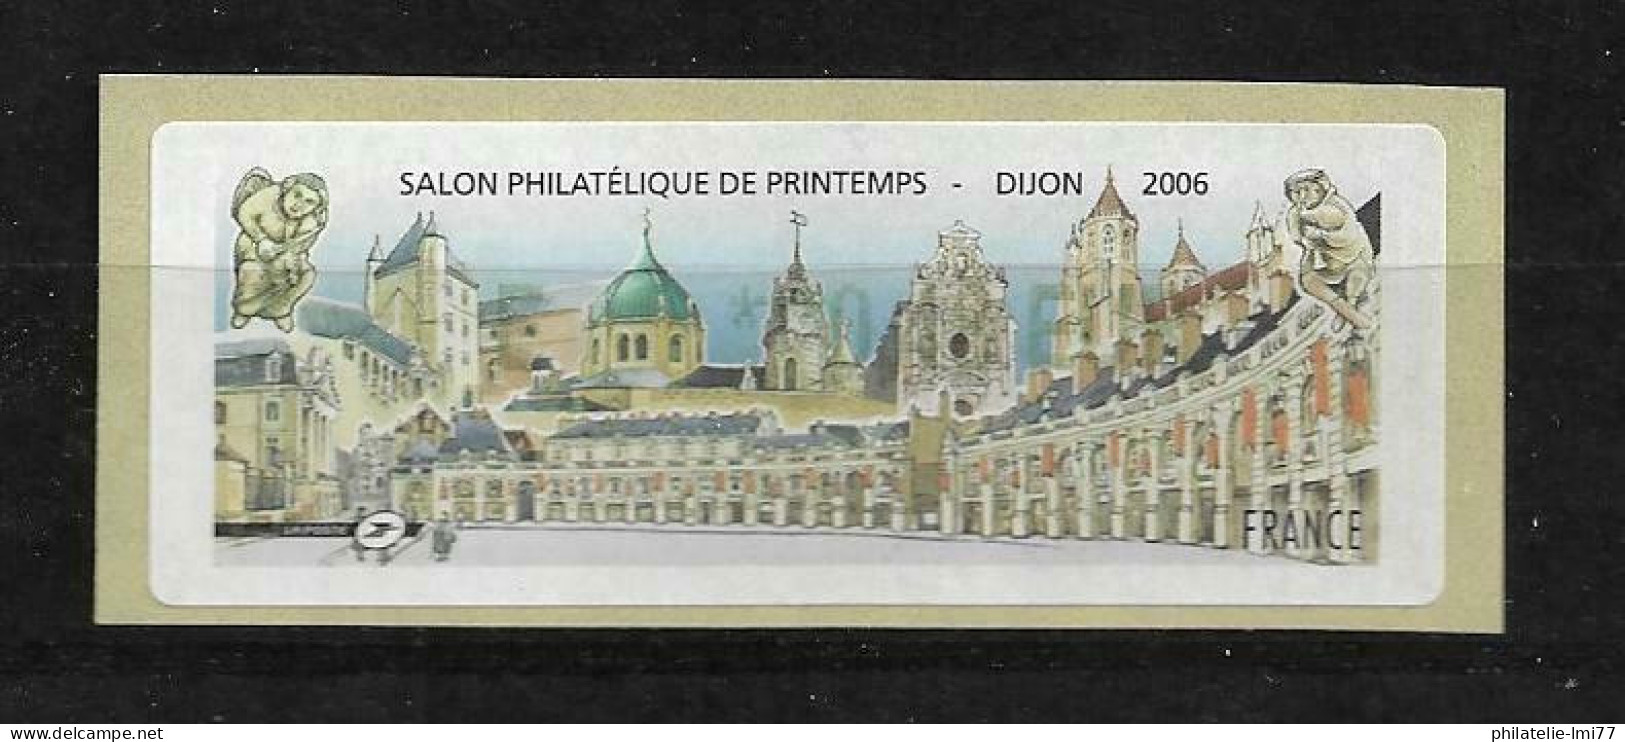 LISA 0,48 € - Salon Philatélique De Printemps - Dijon 2006 - 1999-2009 Vignettes Illustrées